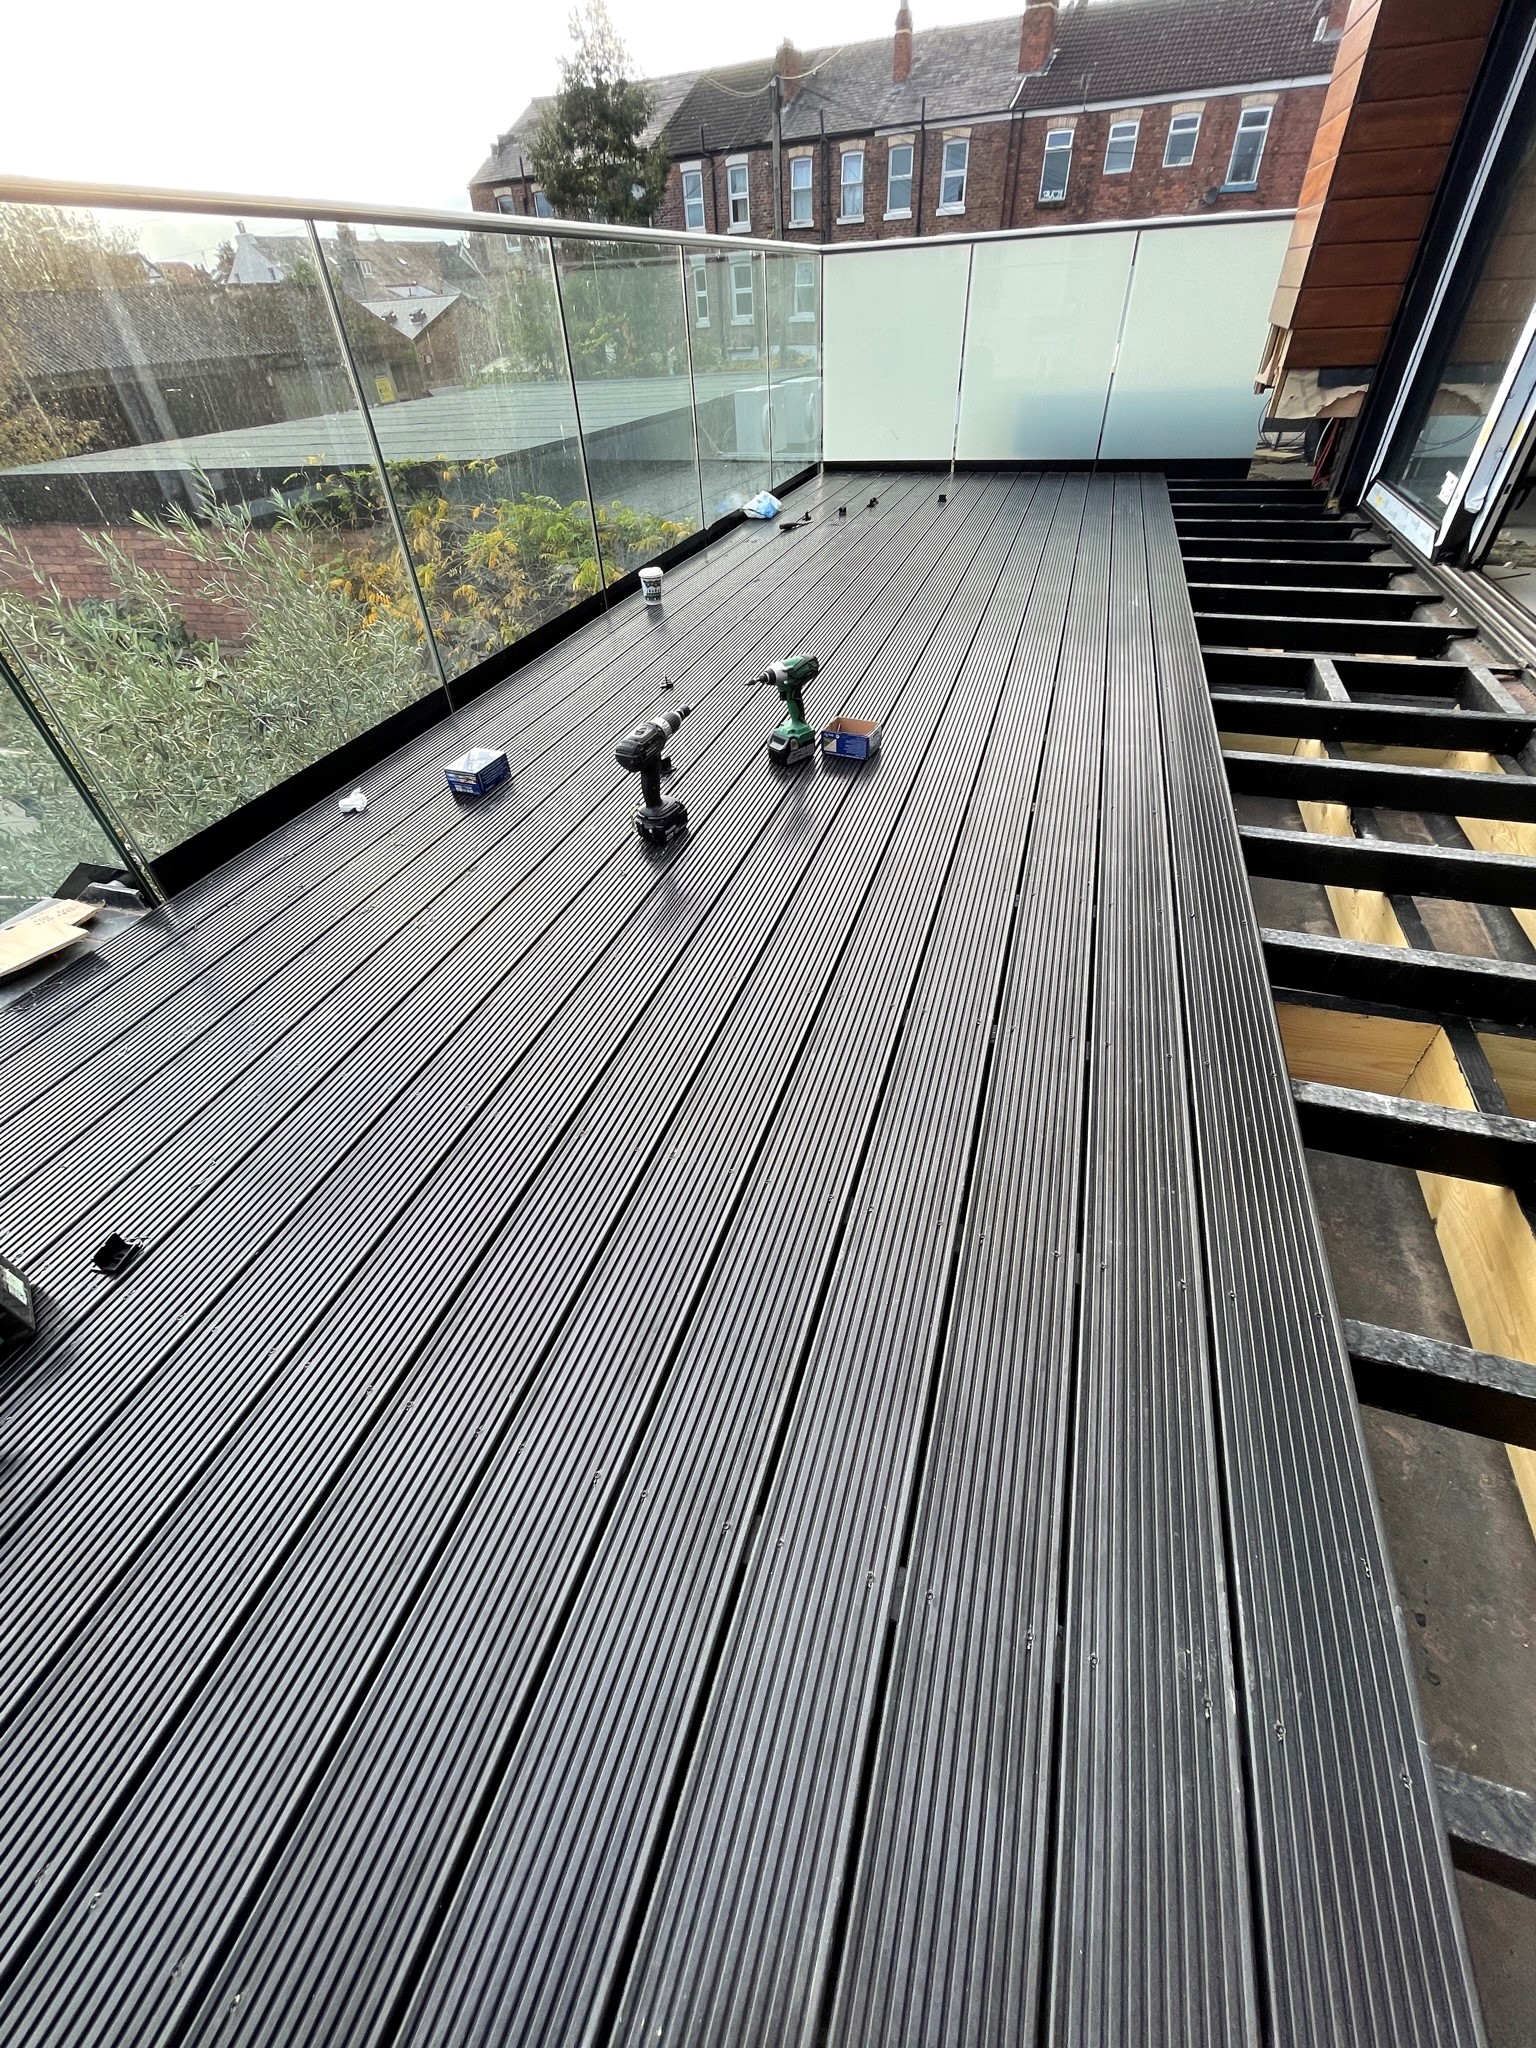 black solid composite decking boards